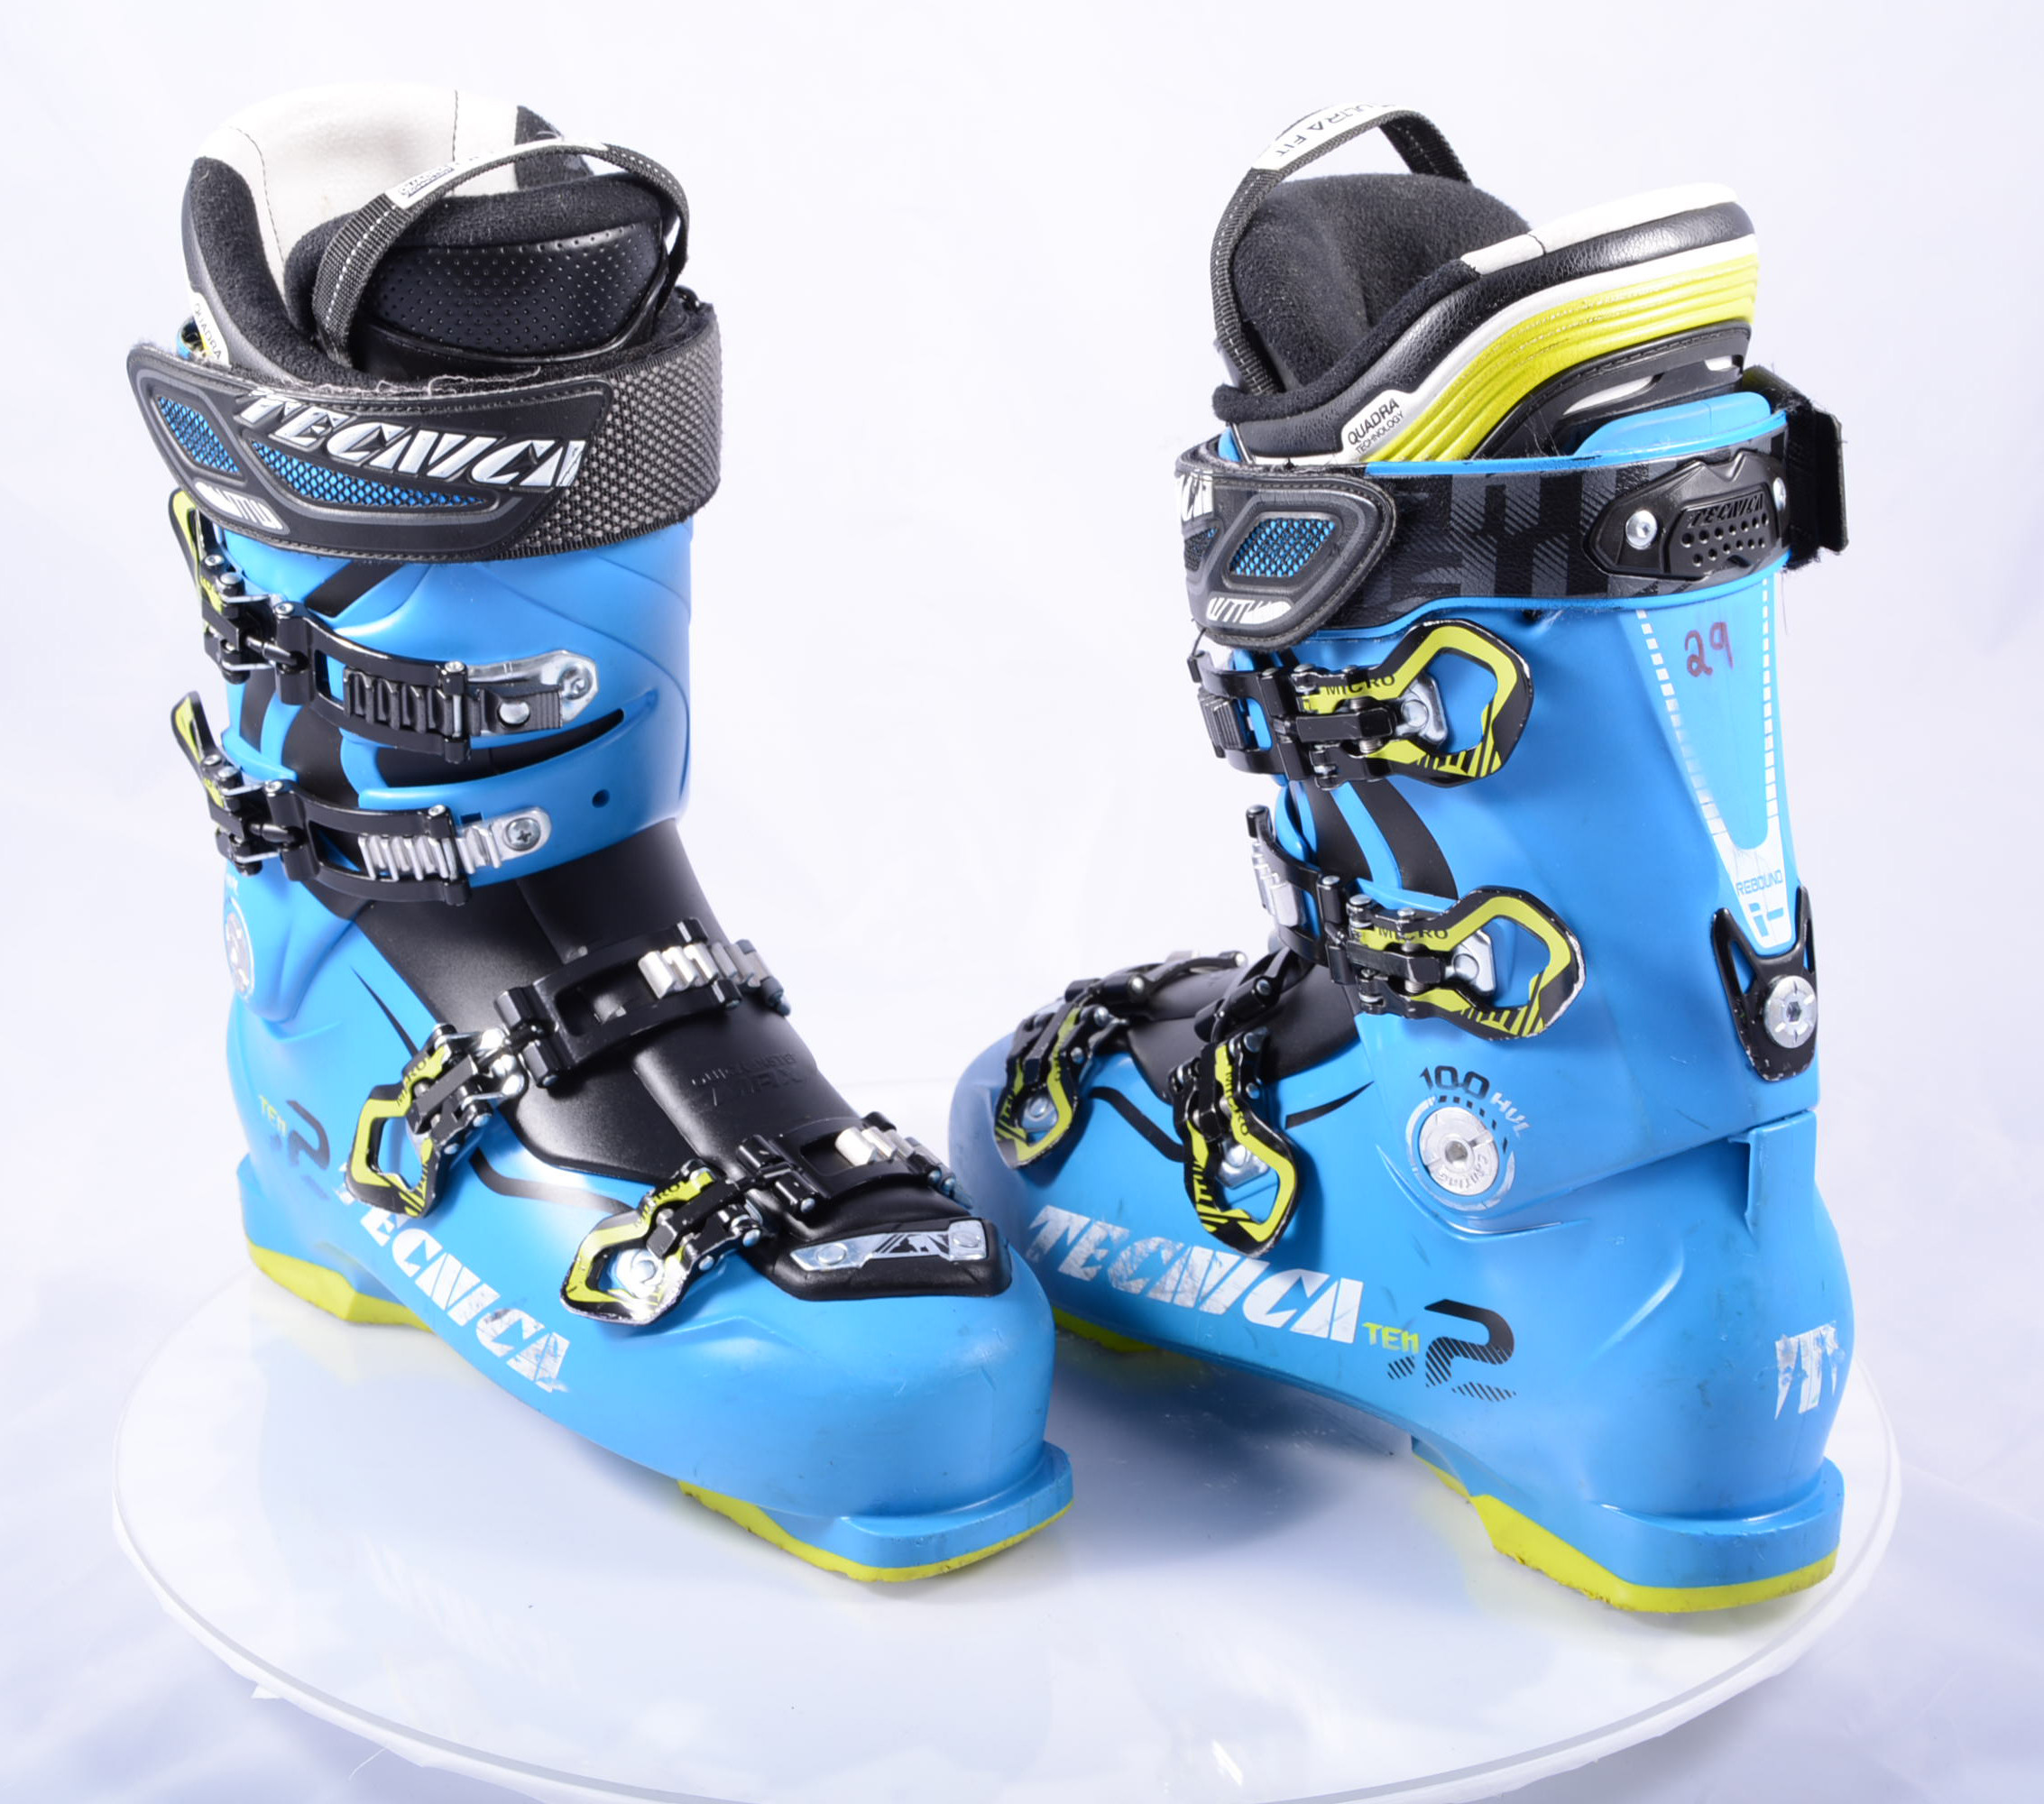 ski boots TECNICA TEN.2 HVL blue, QUADRA ULTRA FIT hvl, REBOUND - Mardosport.com